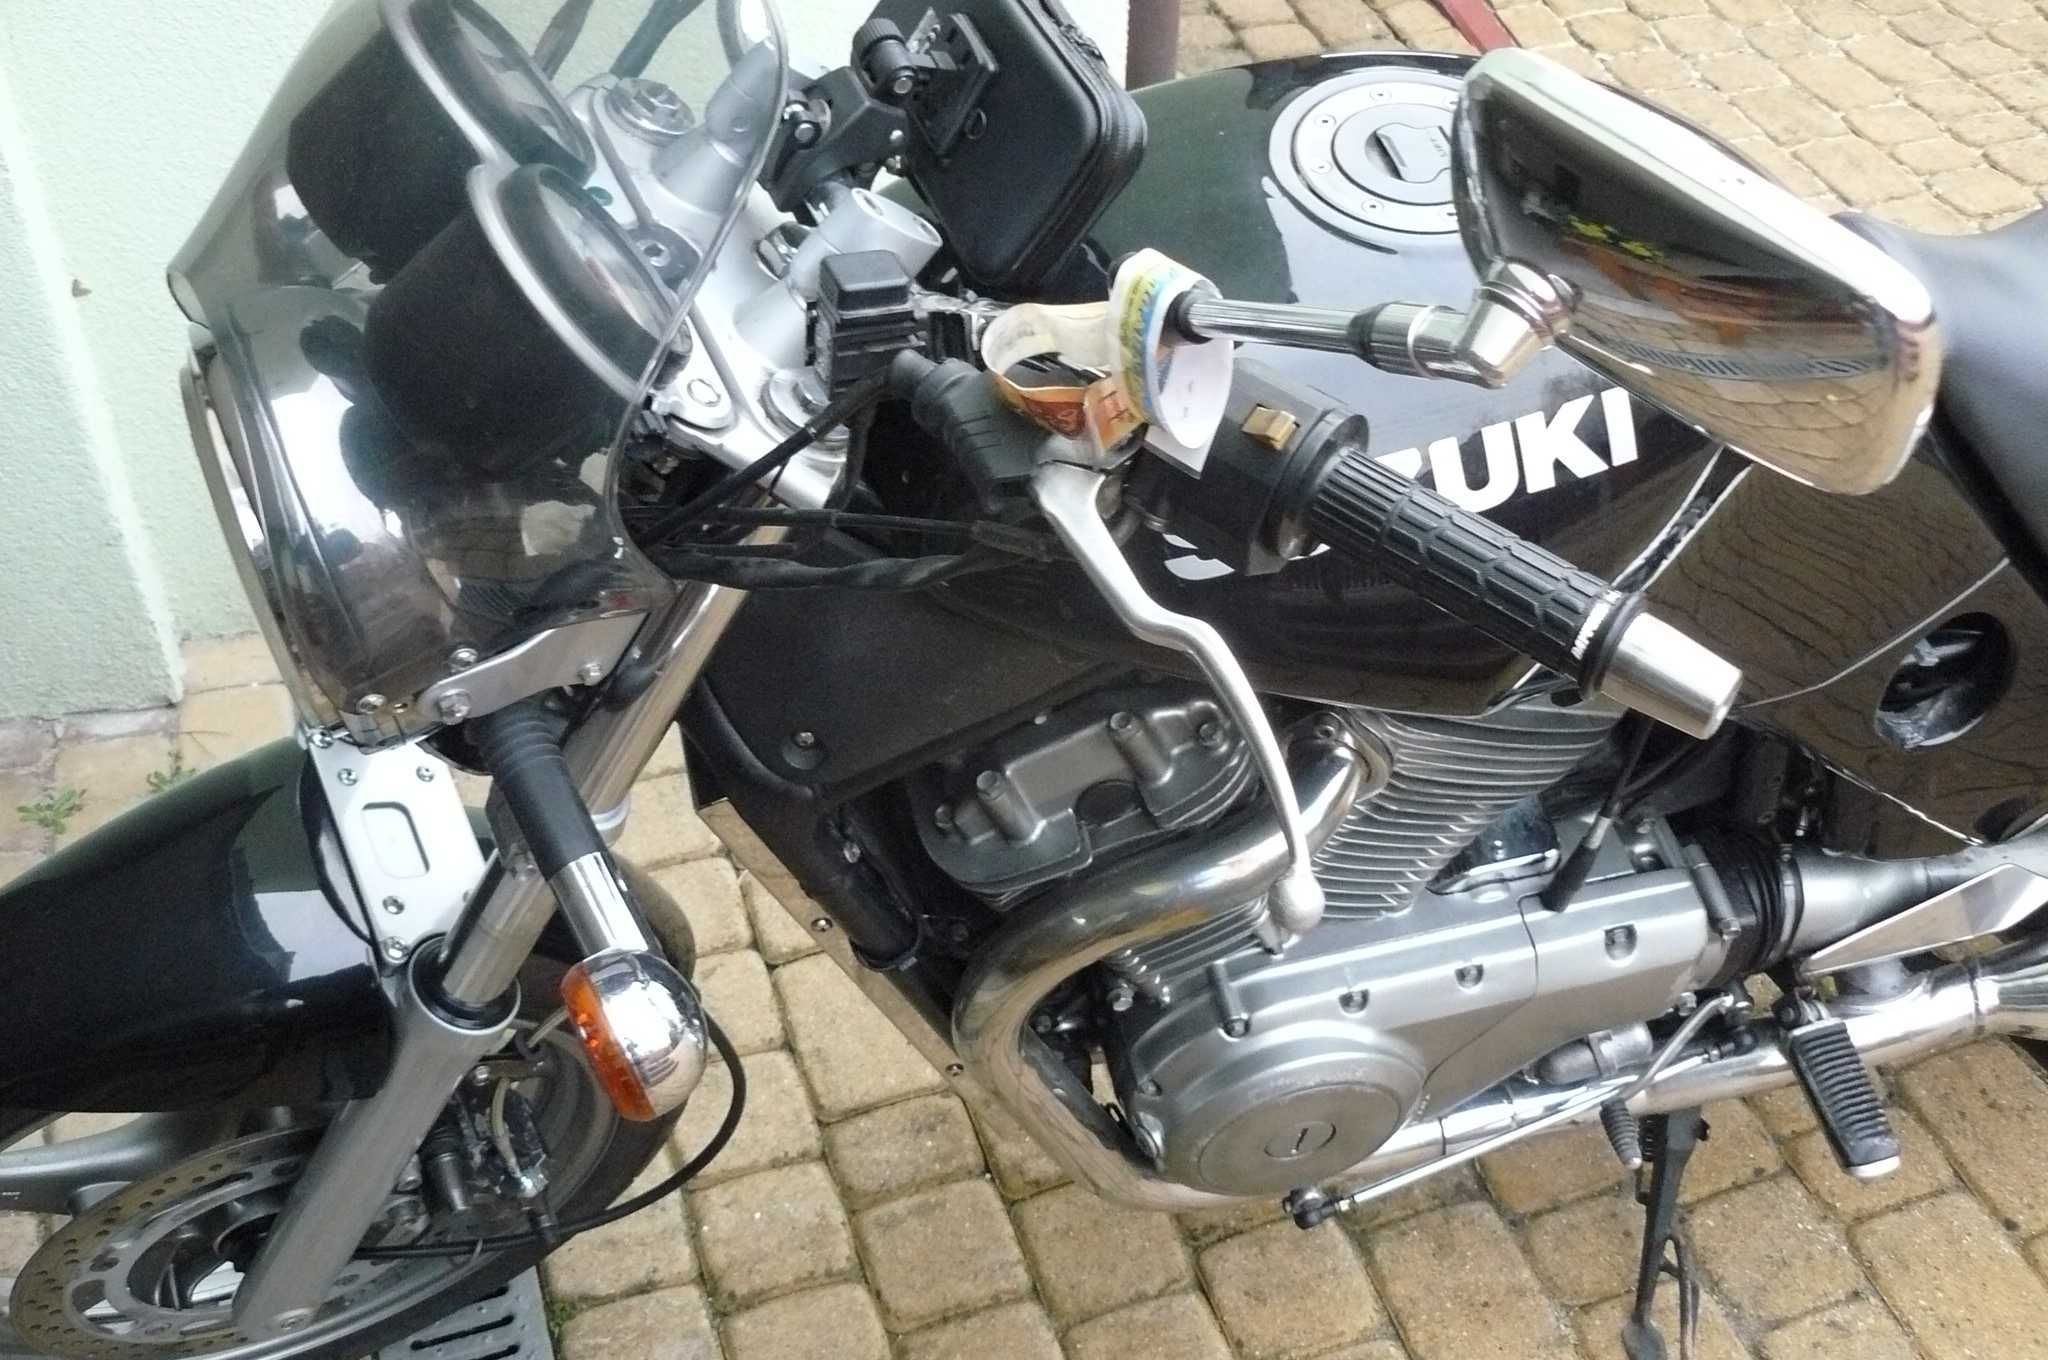 MOTOCYKL Suzuki vx 800 TANIO